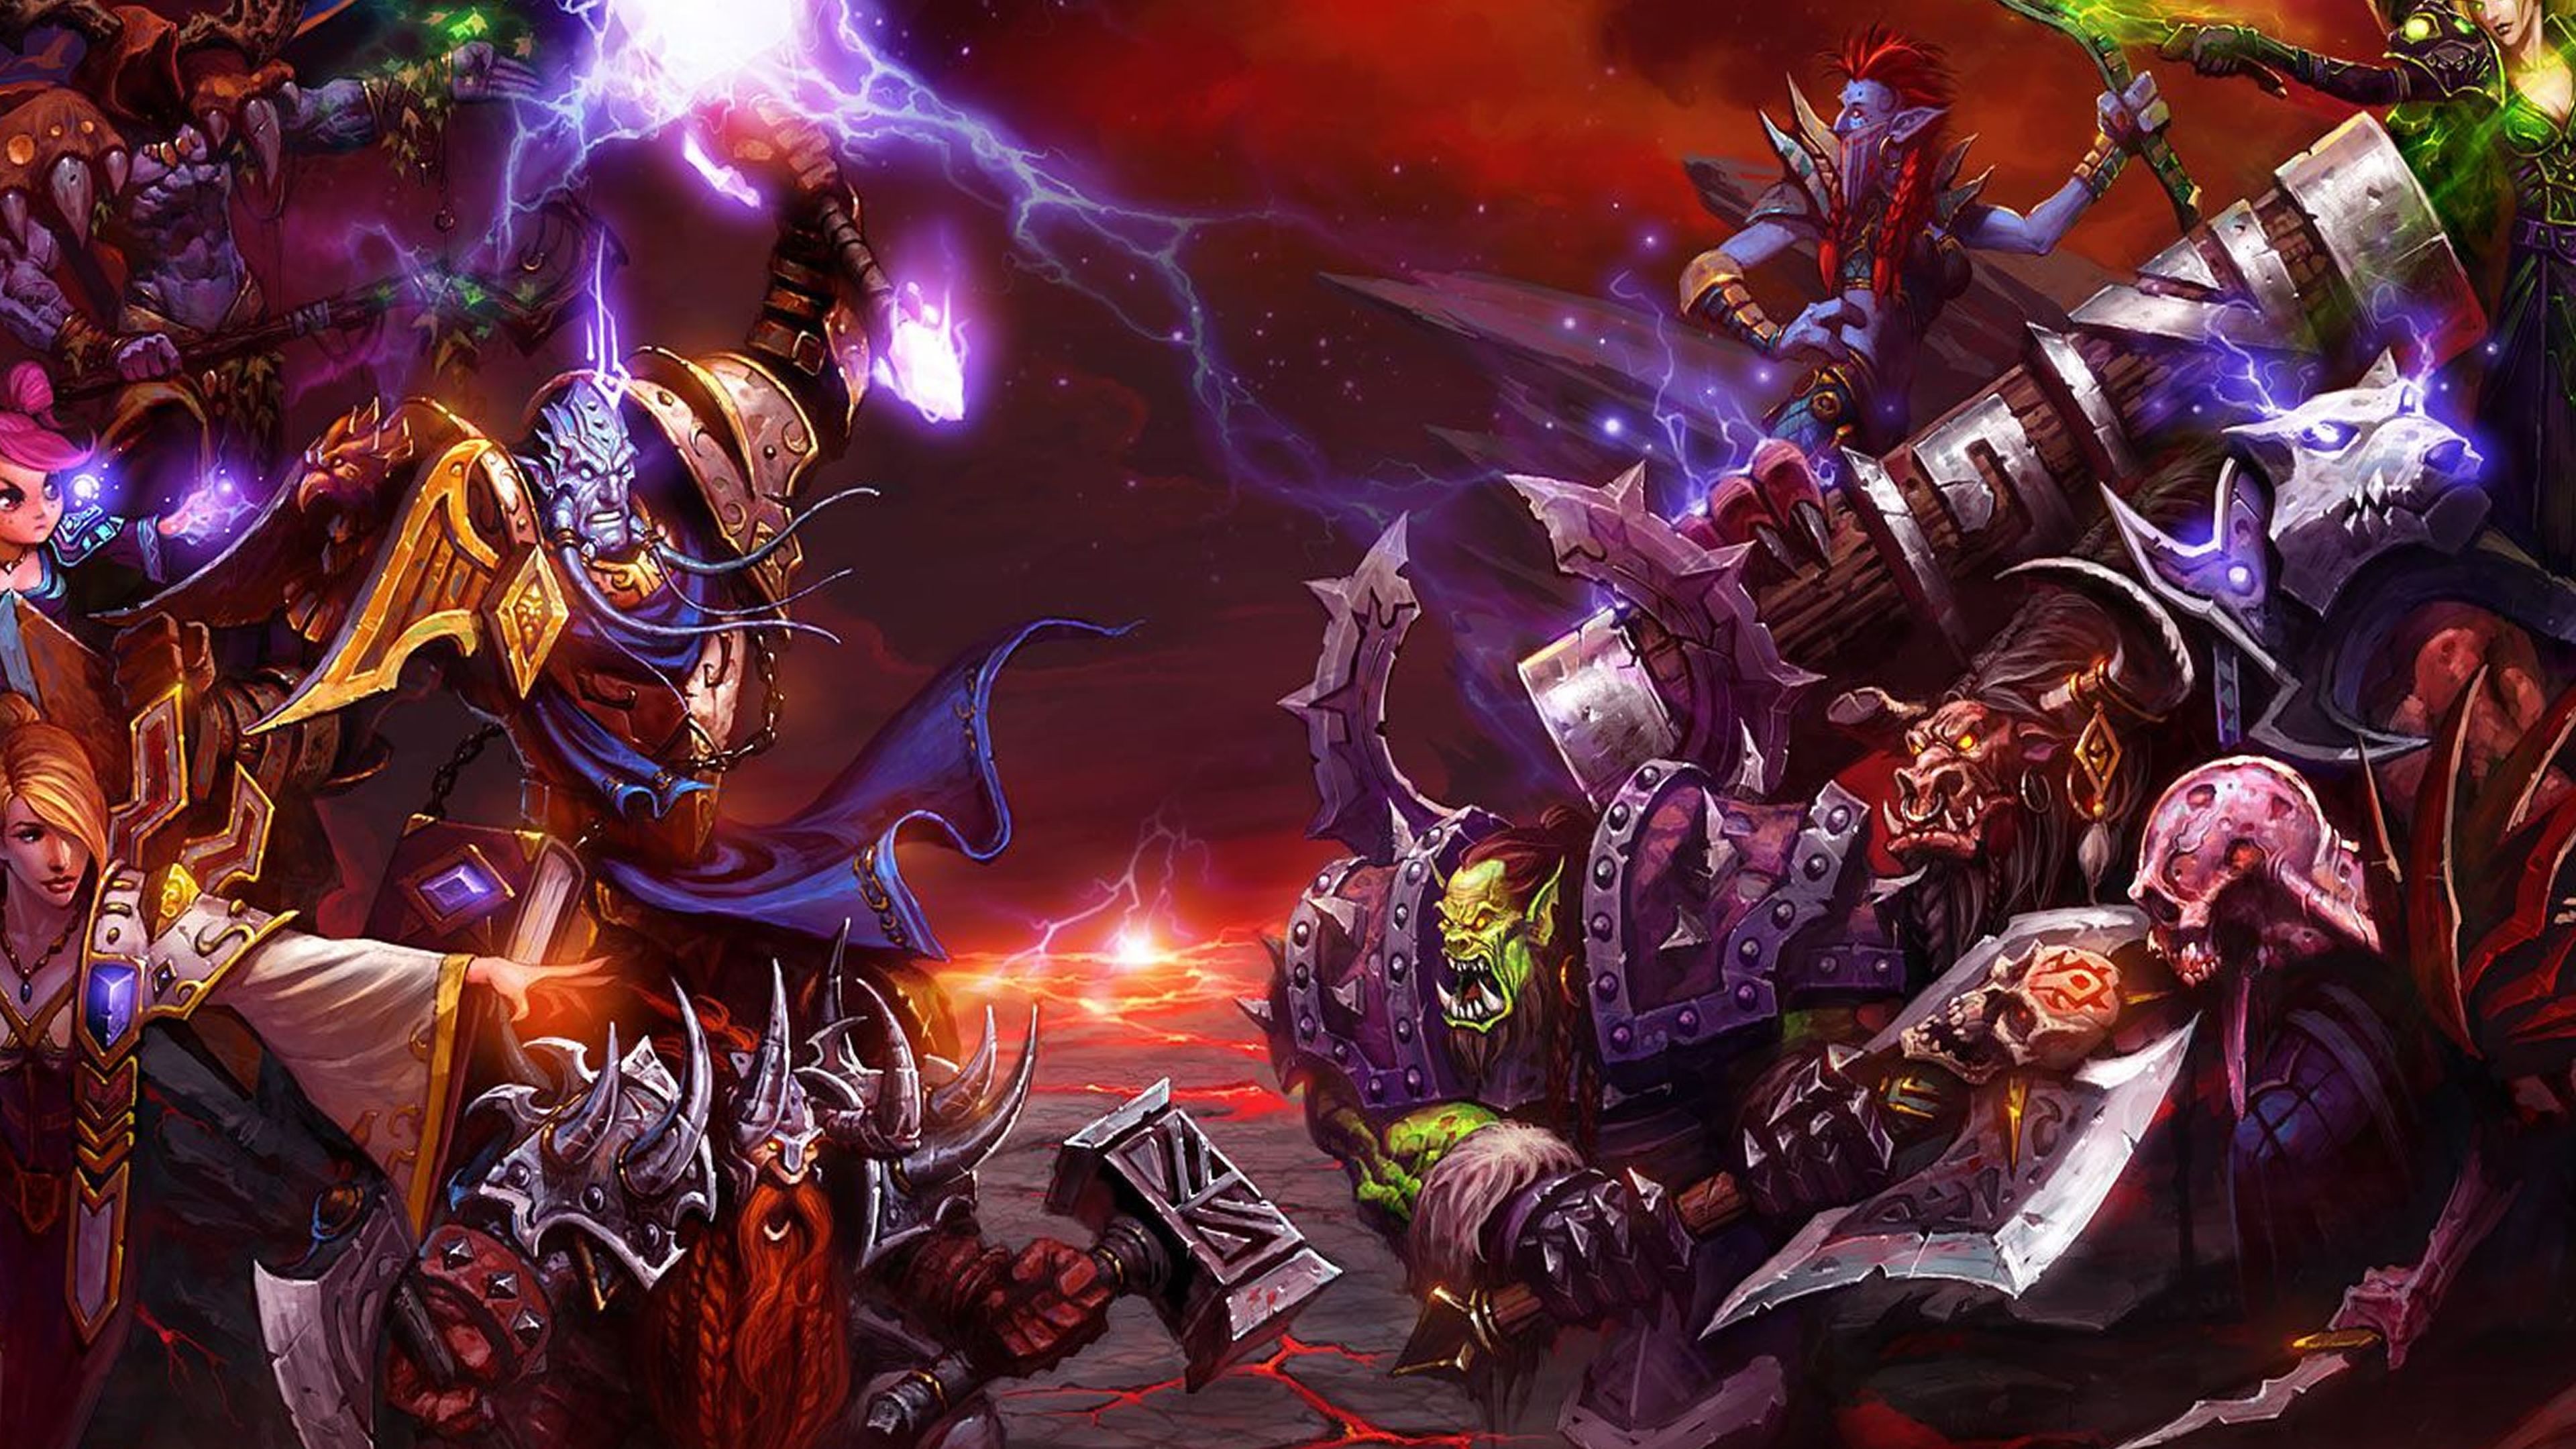 Wolrd of Warcraft: The Burning Crusade